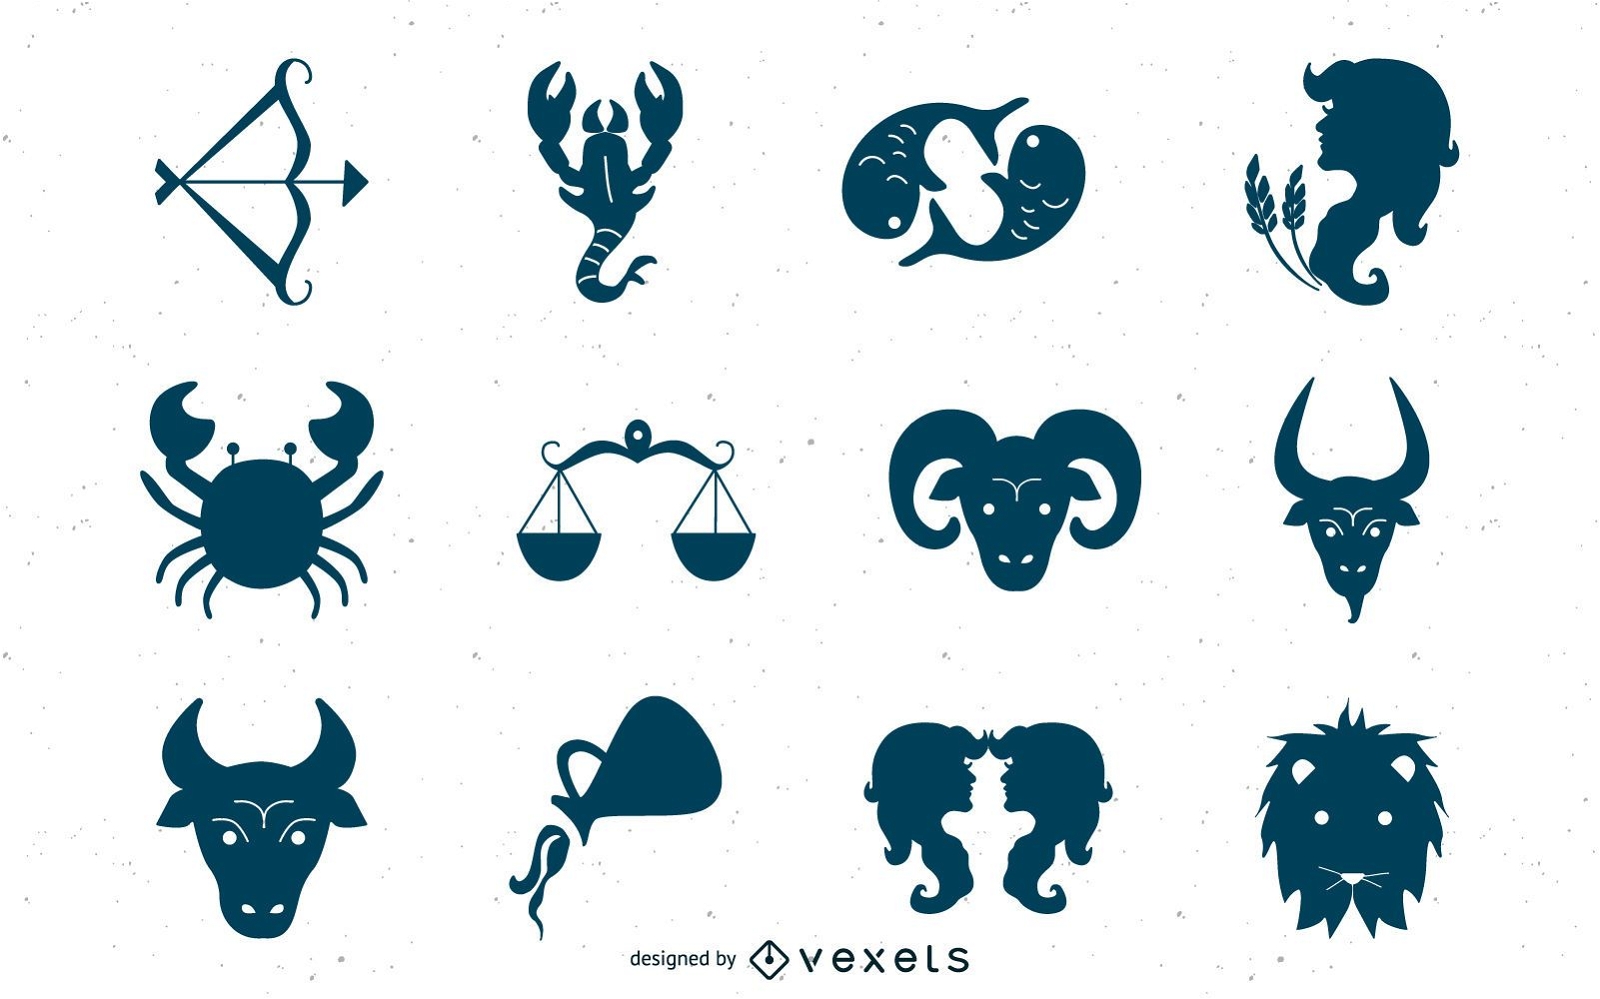 Iconos creativos del zodiaco